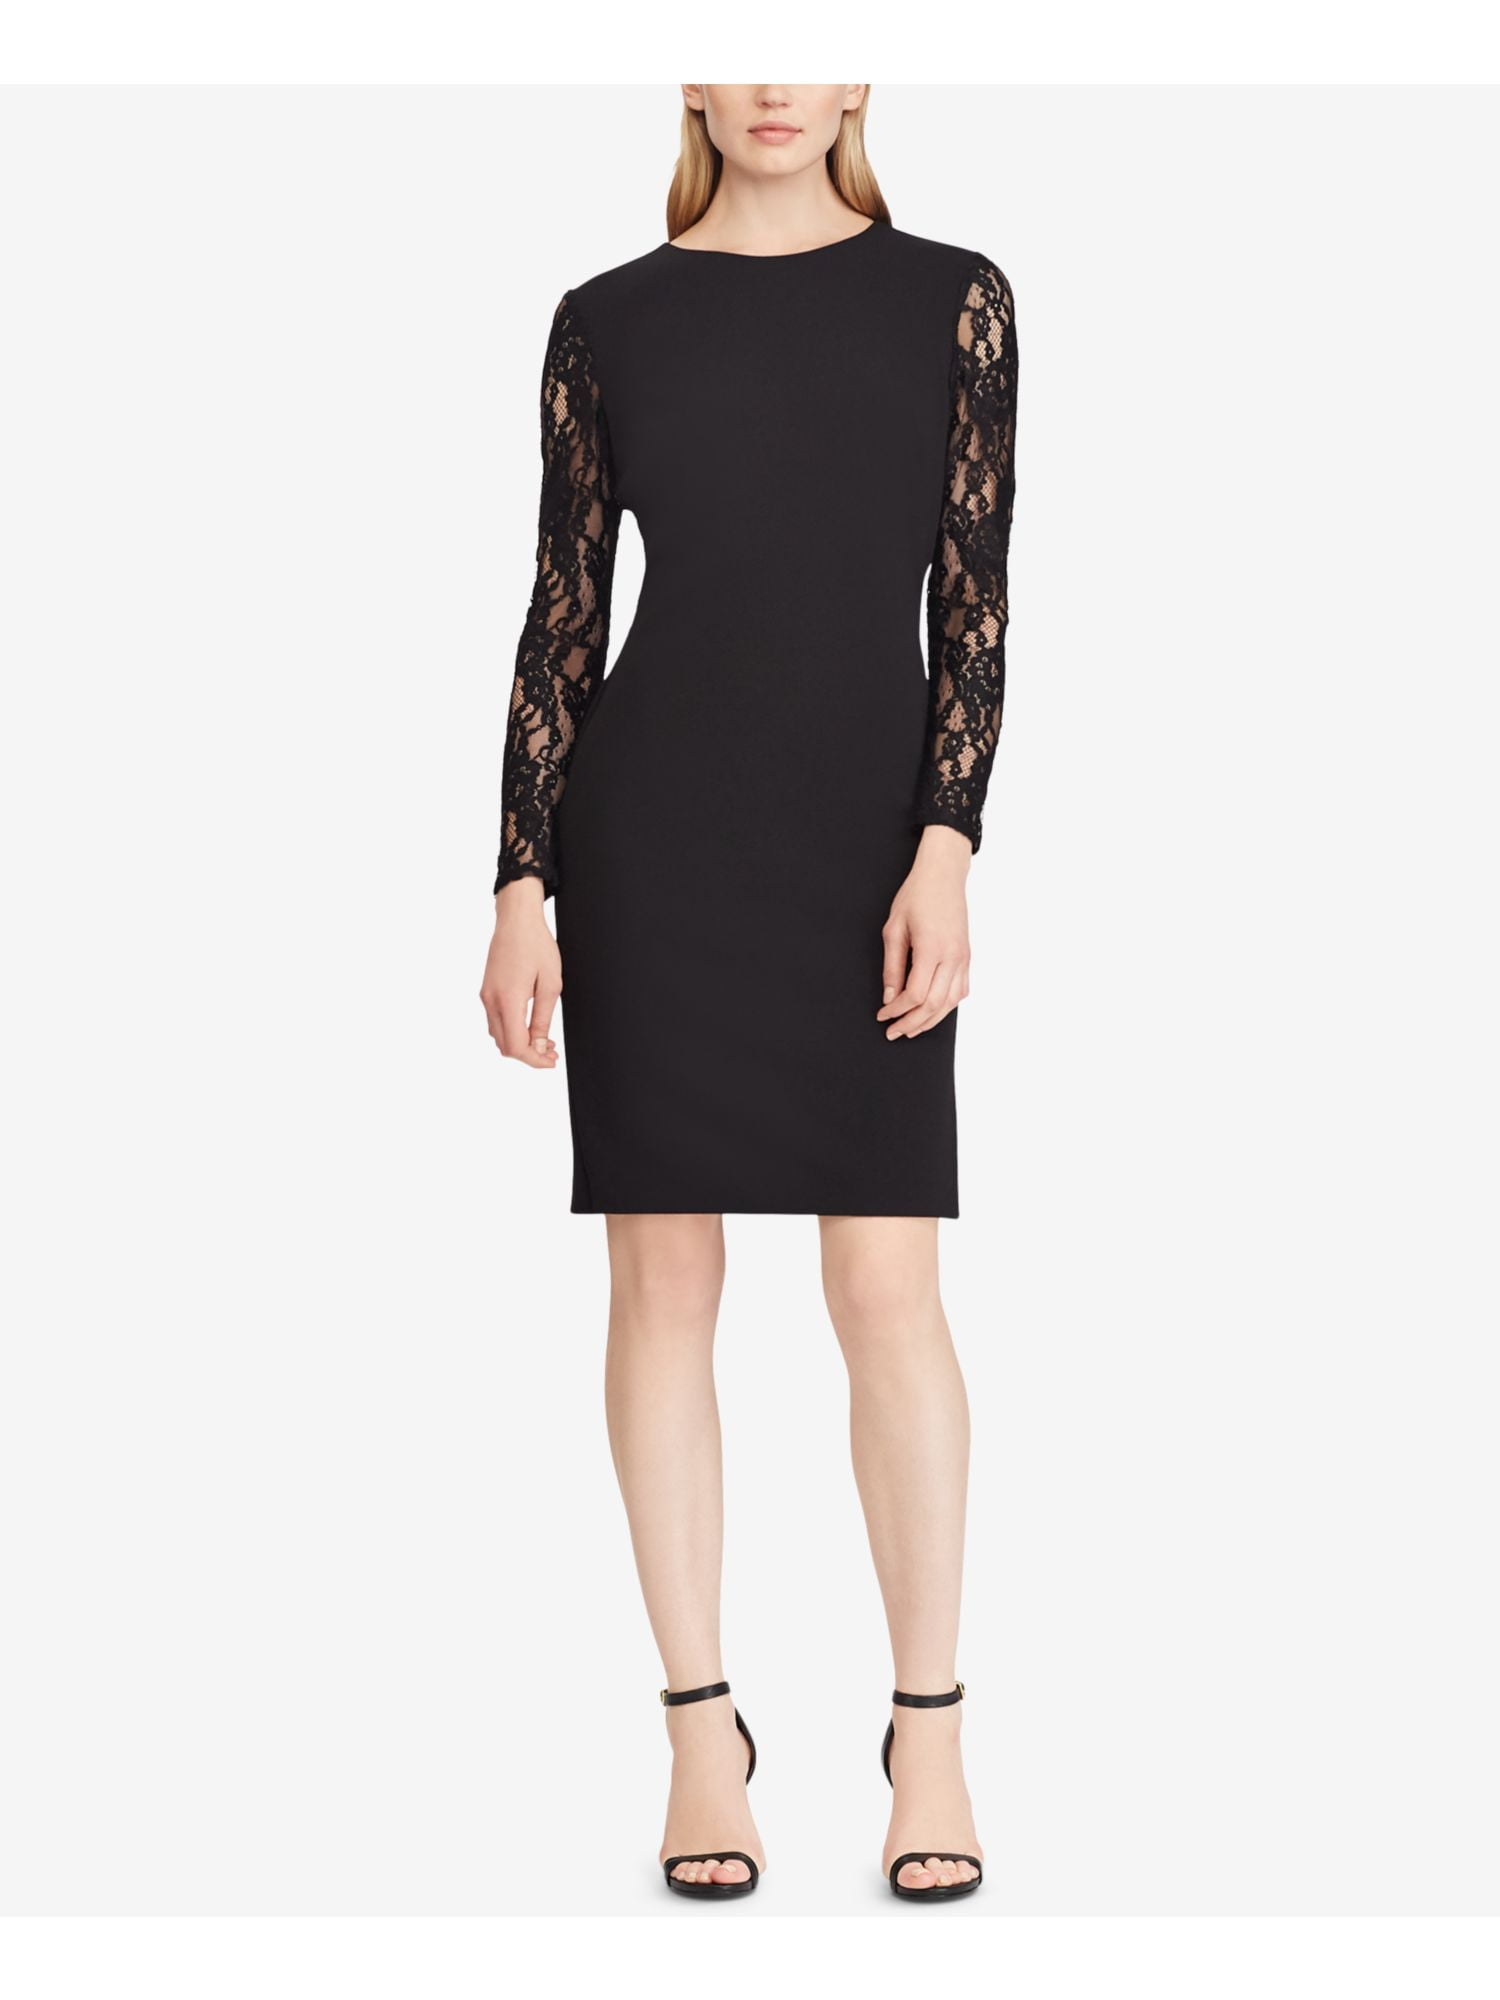 RALPH LAUREN $175 Womens New 1105 Black Lace Paneled Jersey Dress 12 B ...